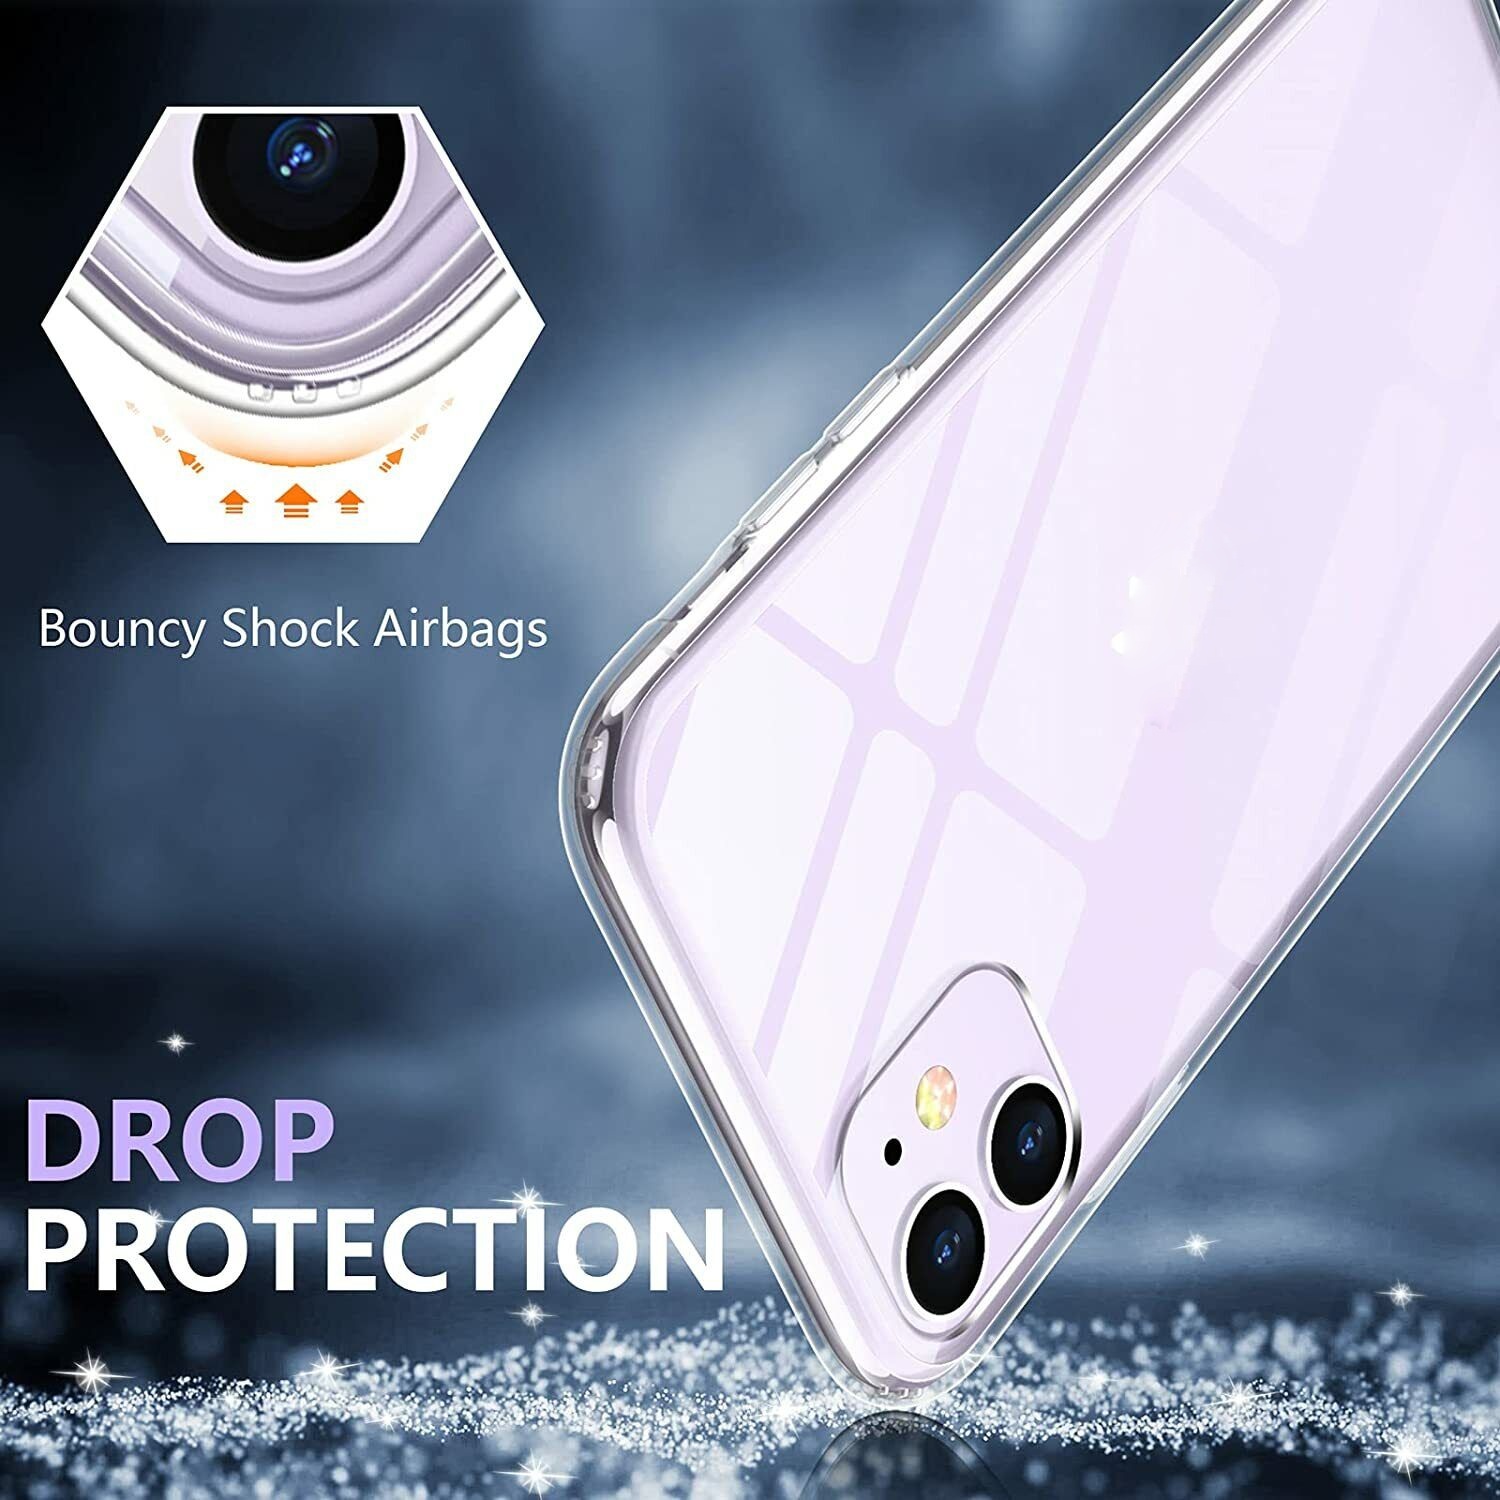 Ốp lưng chống sốc trong suốt cho iPhone 11 Pro Max hiệu Memumi Glitter siêu mỏng 1.5mm độ trong tuyệt đối, chống trầy xước, chống ố vàng, tản nhiệt tốt